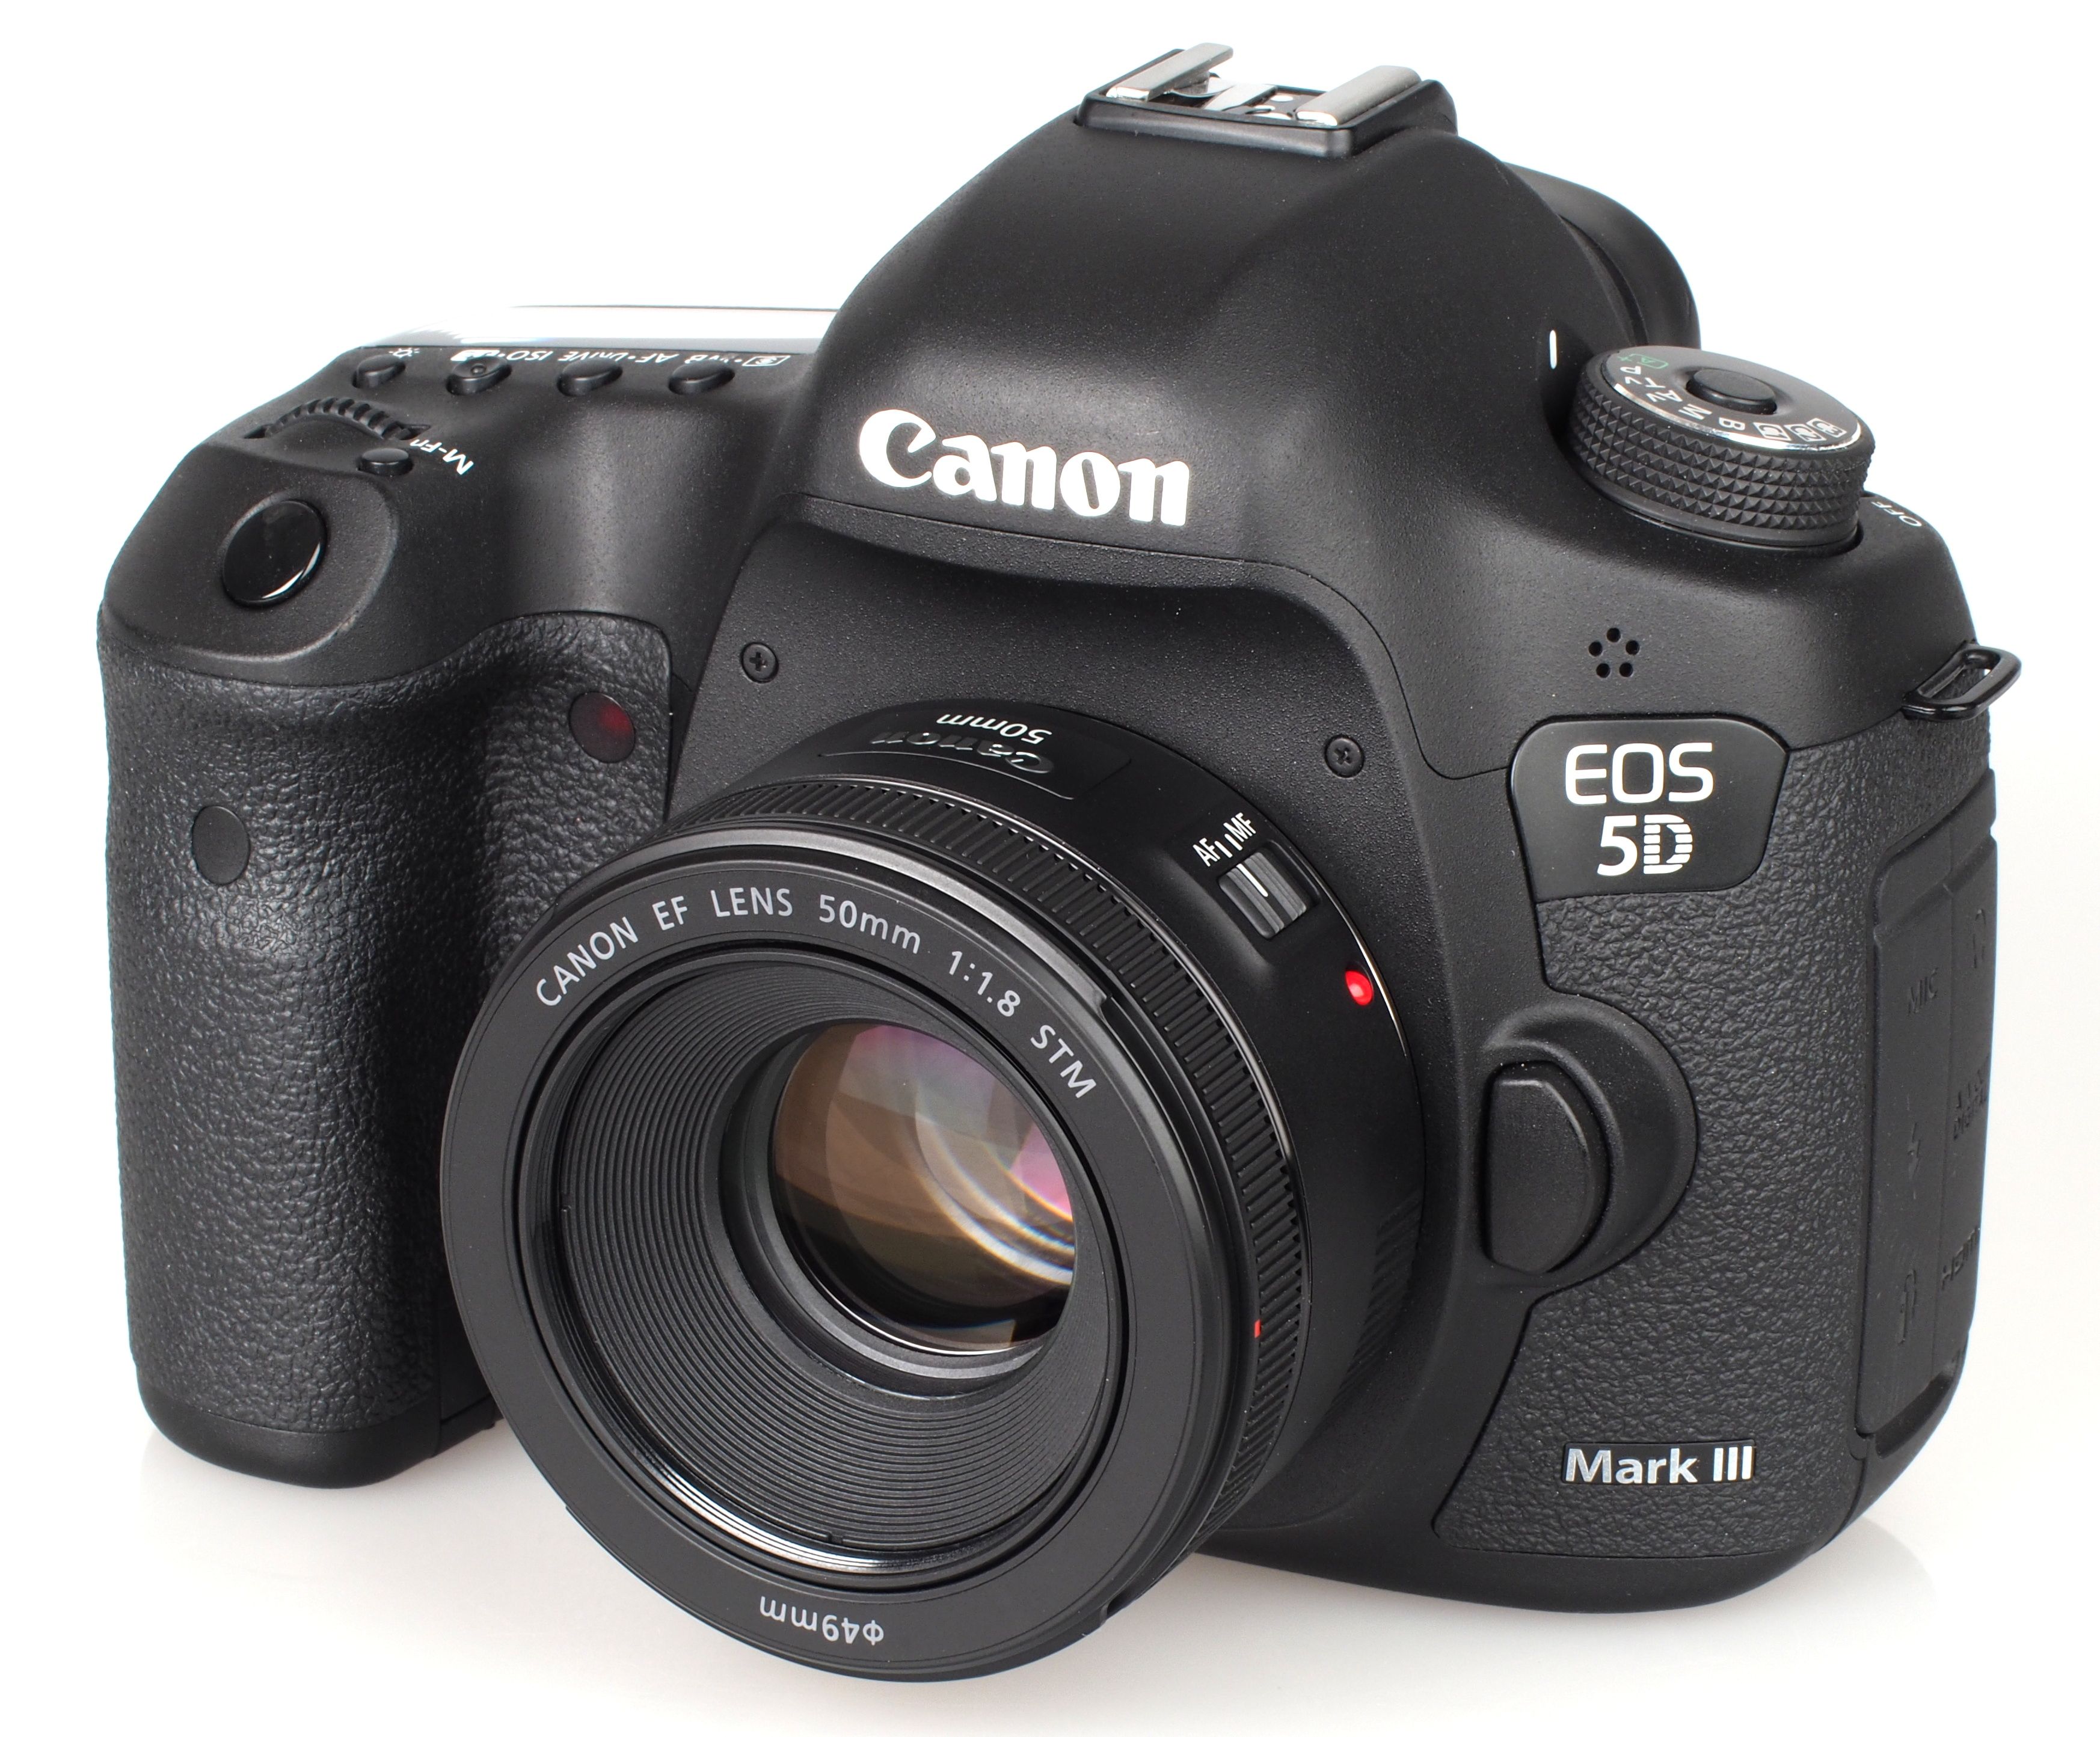 Canon EF 50mm f/1.8 STM Lens 